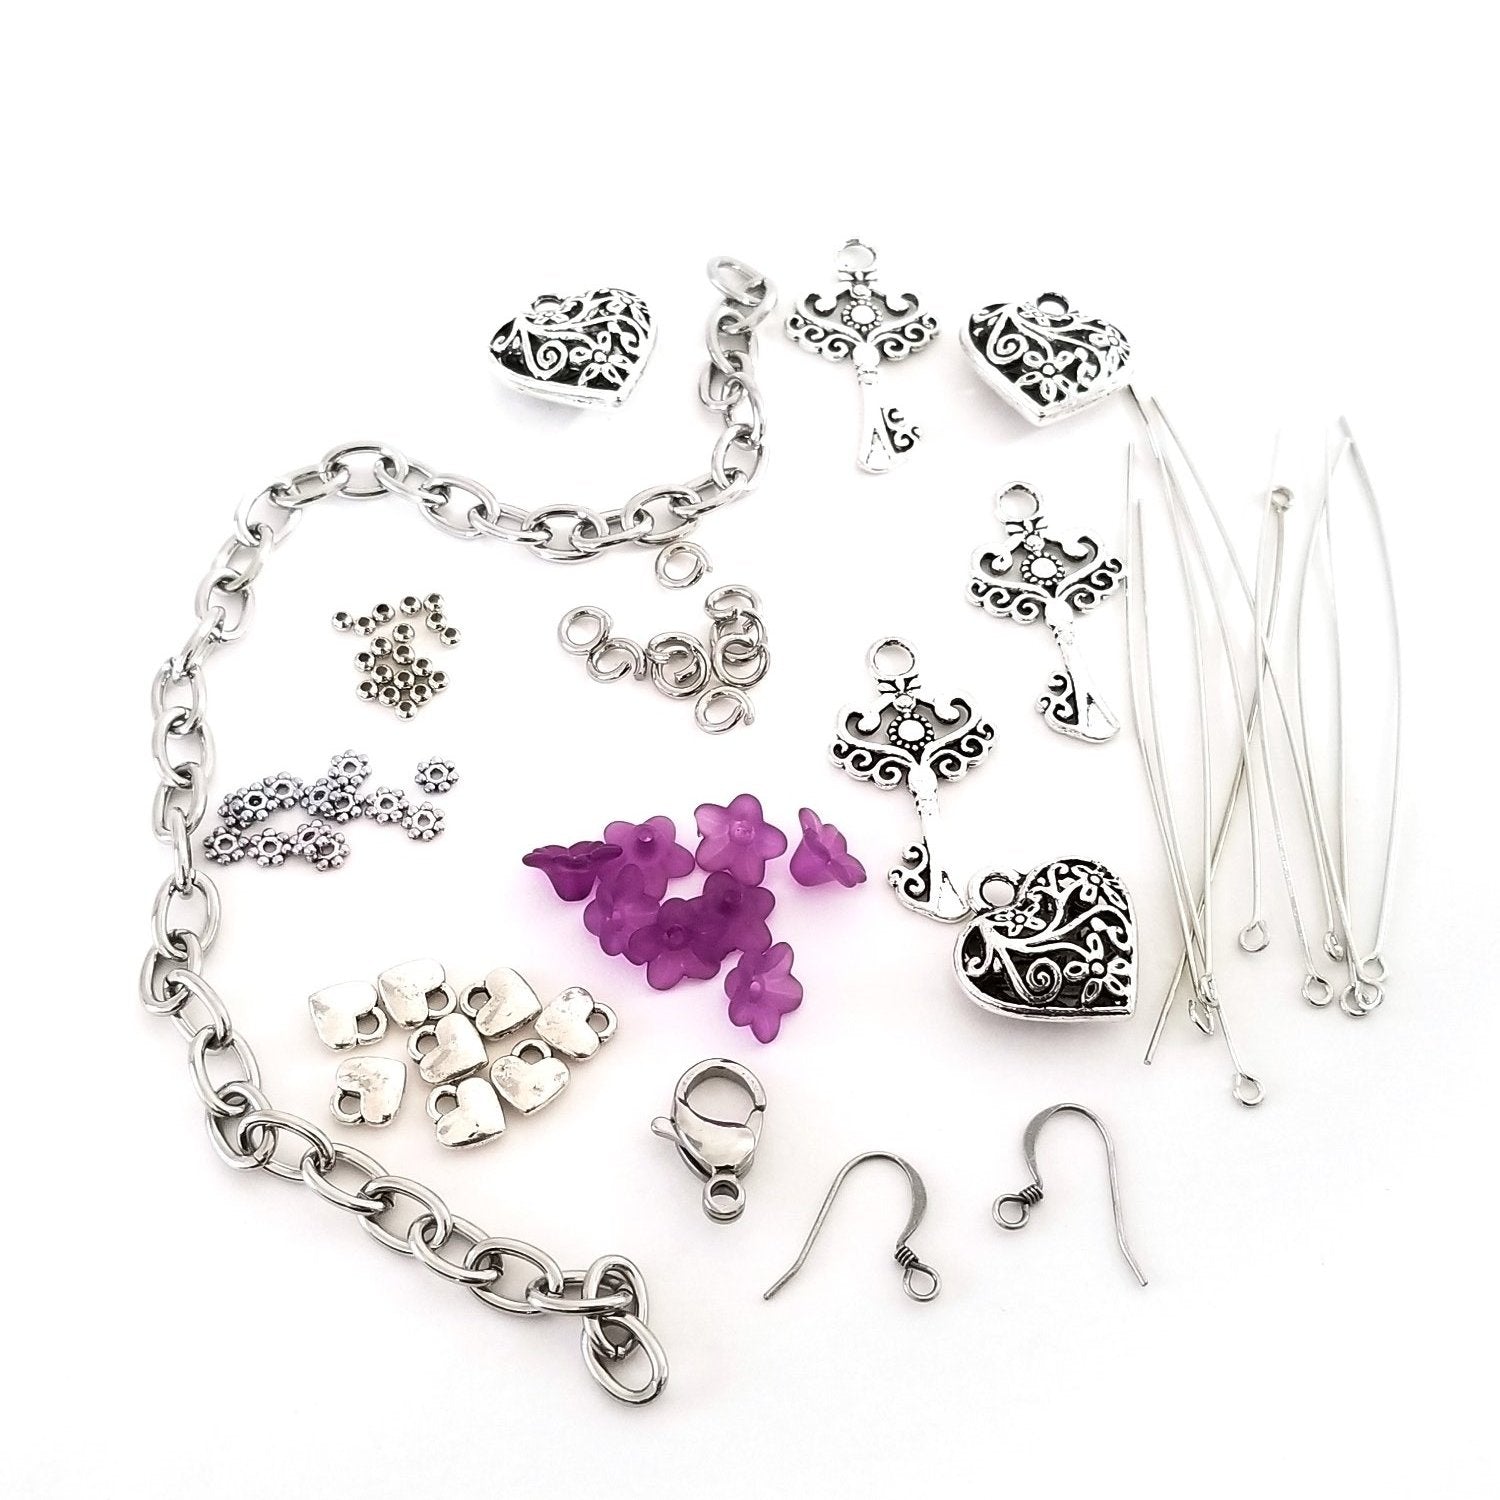 Key to my Heart Charm Bracelet Kit, Do It Yourself Jewelry Making